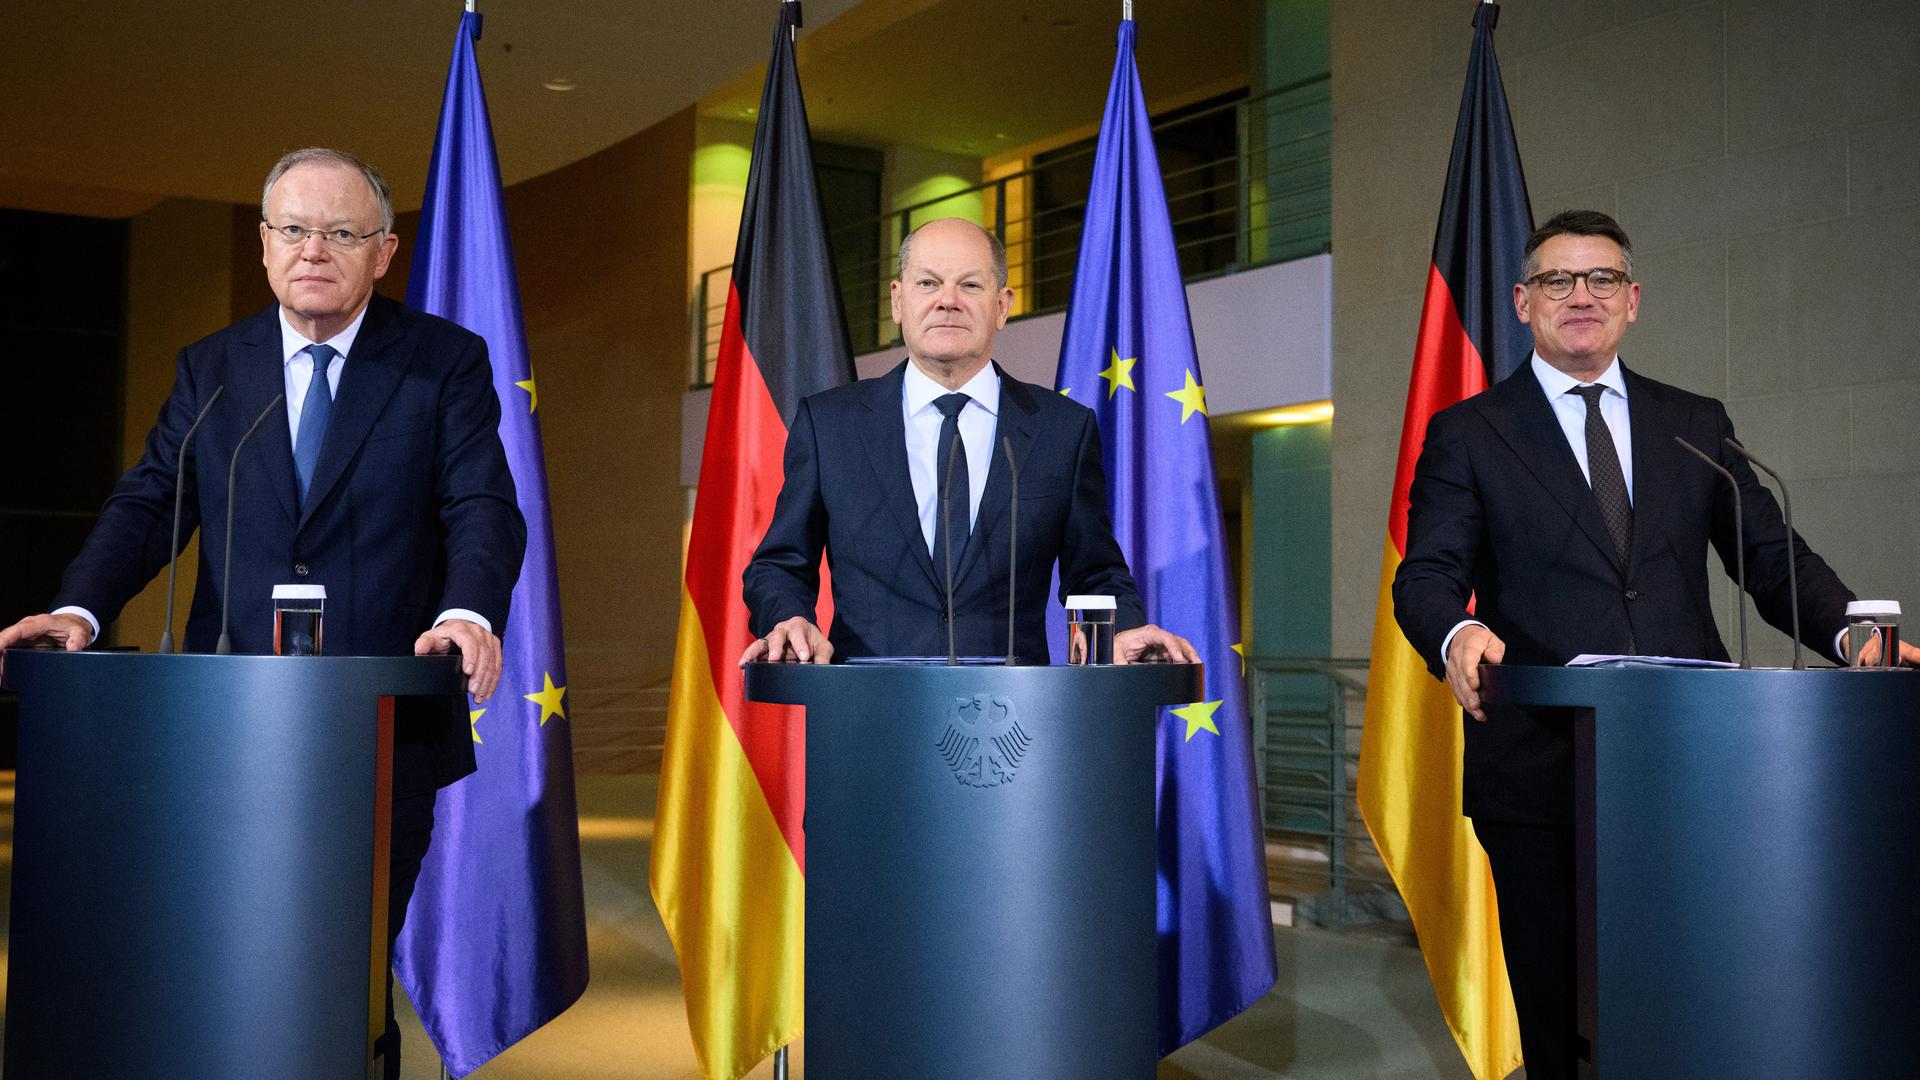 Bundeskanzler Olaf Scholz (M, SPD) äußert sich zusammen mit Boris Rhein (r, CDU), Ministerpräsident von Hessen, und Stephan Weil (l, SPD), Ministerpräsident von Niedersachsen.